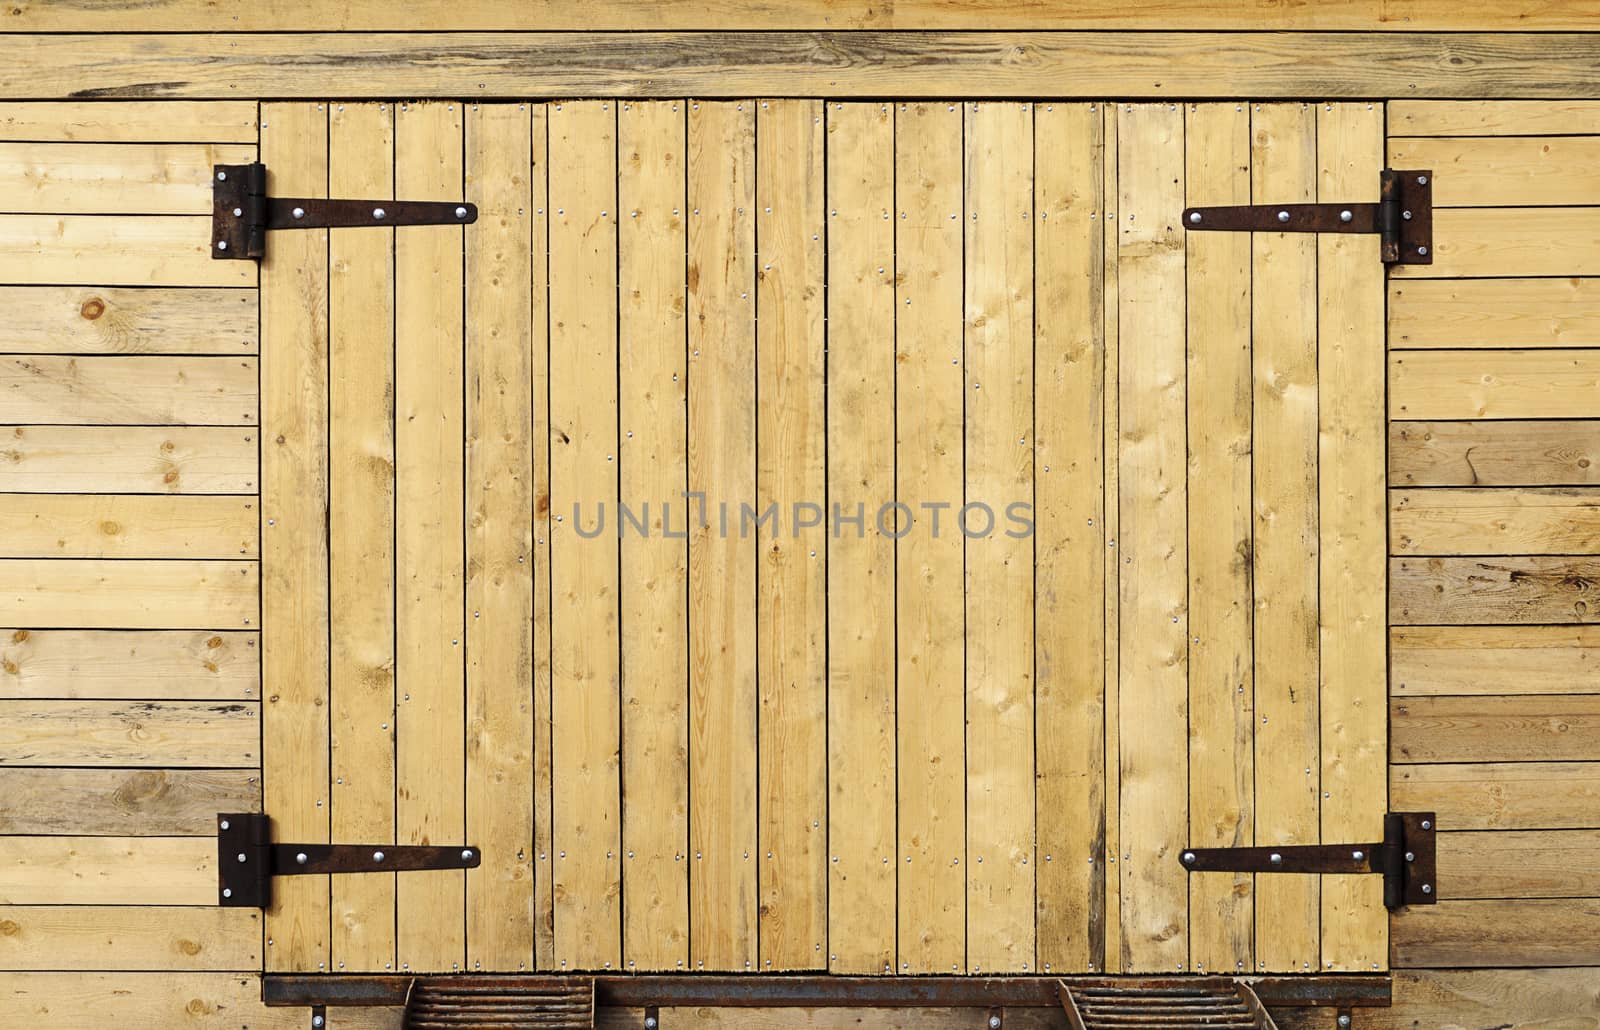 New unpainted wooden garage door with metal hinges